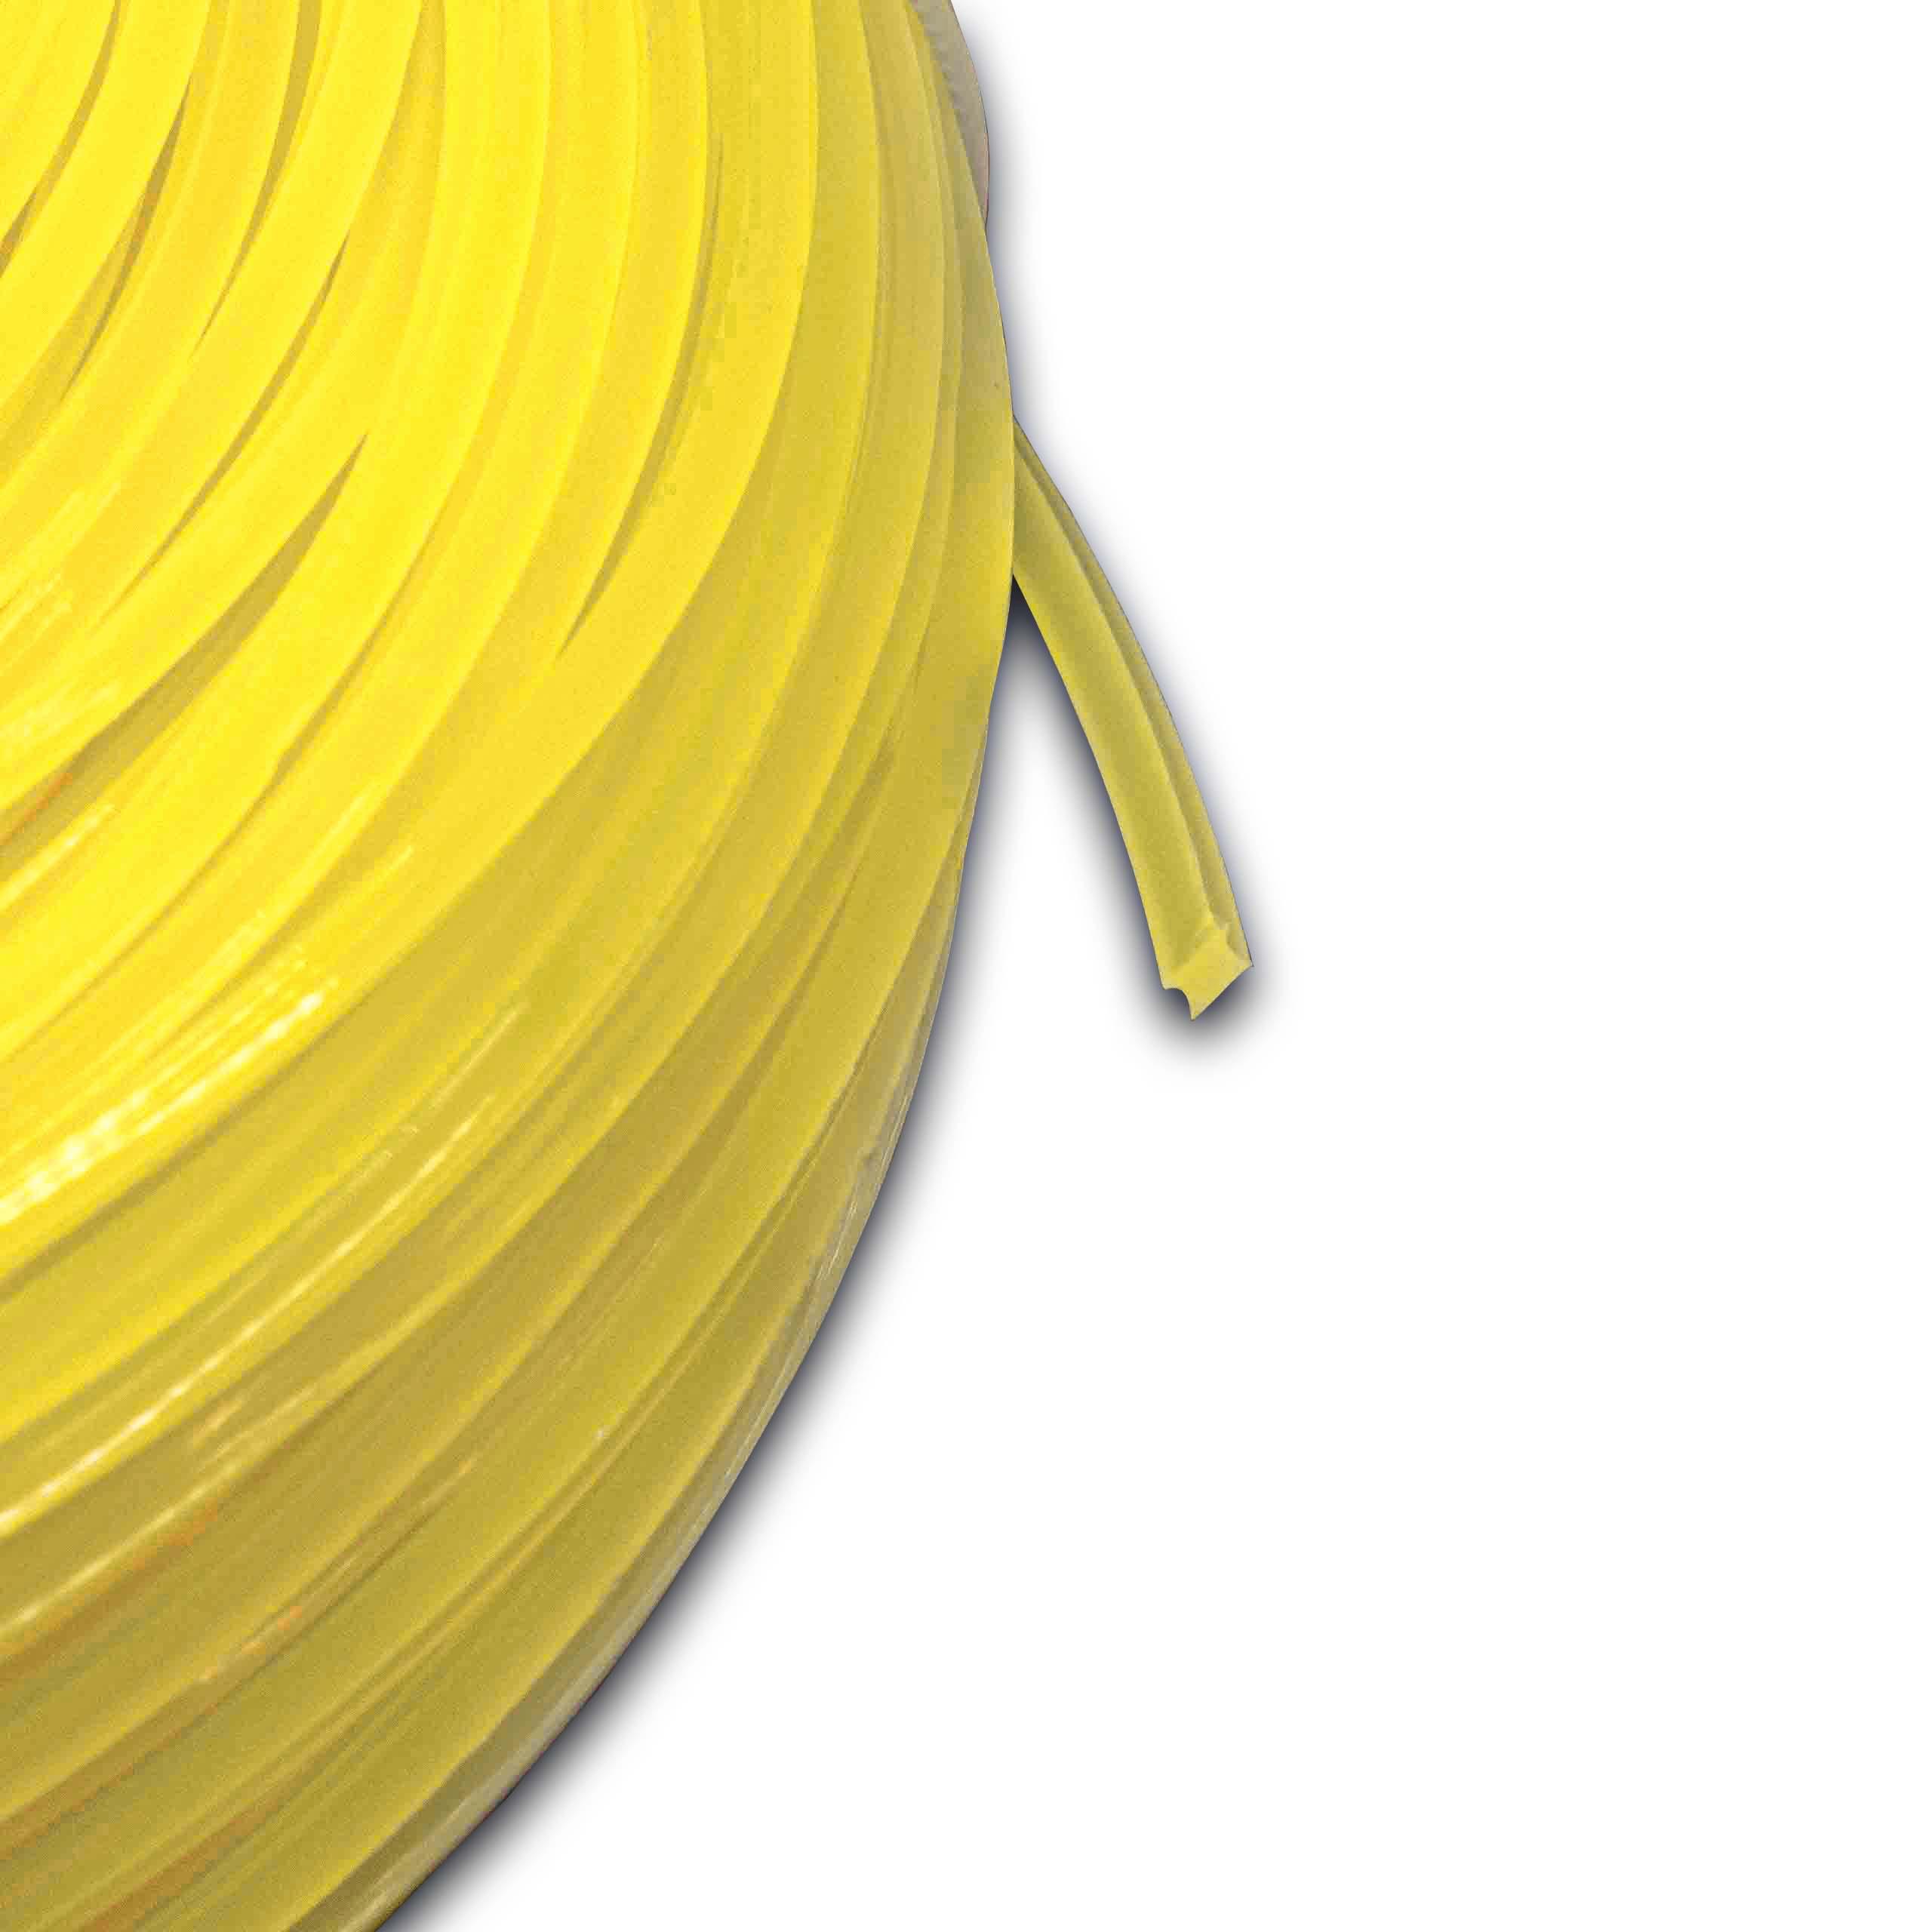 Fil pour débroussailleuse, tondeuse Bosch, Makita - Fil de coupe, jaune, 2,4 mm x 88 m, carré